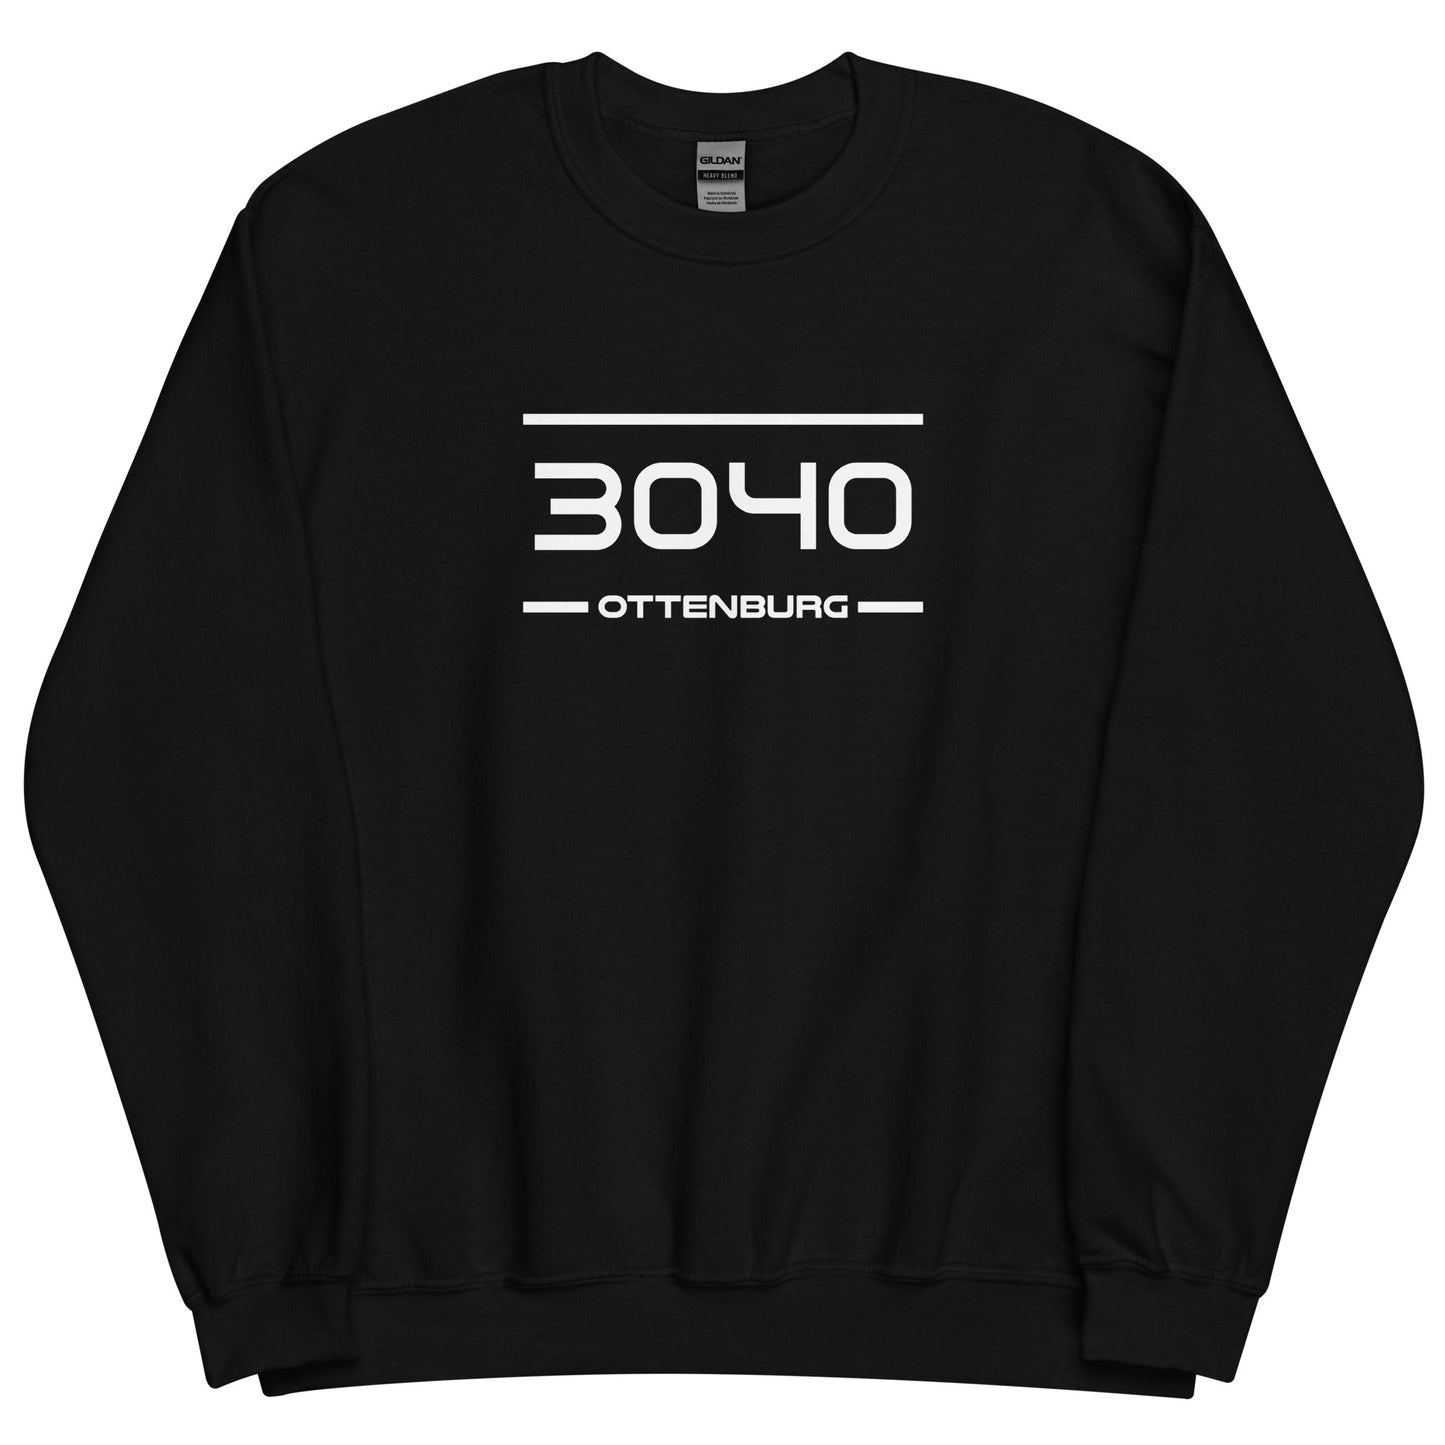 Sweater - 3040 - Ottenburg (M/V)